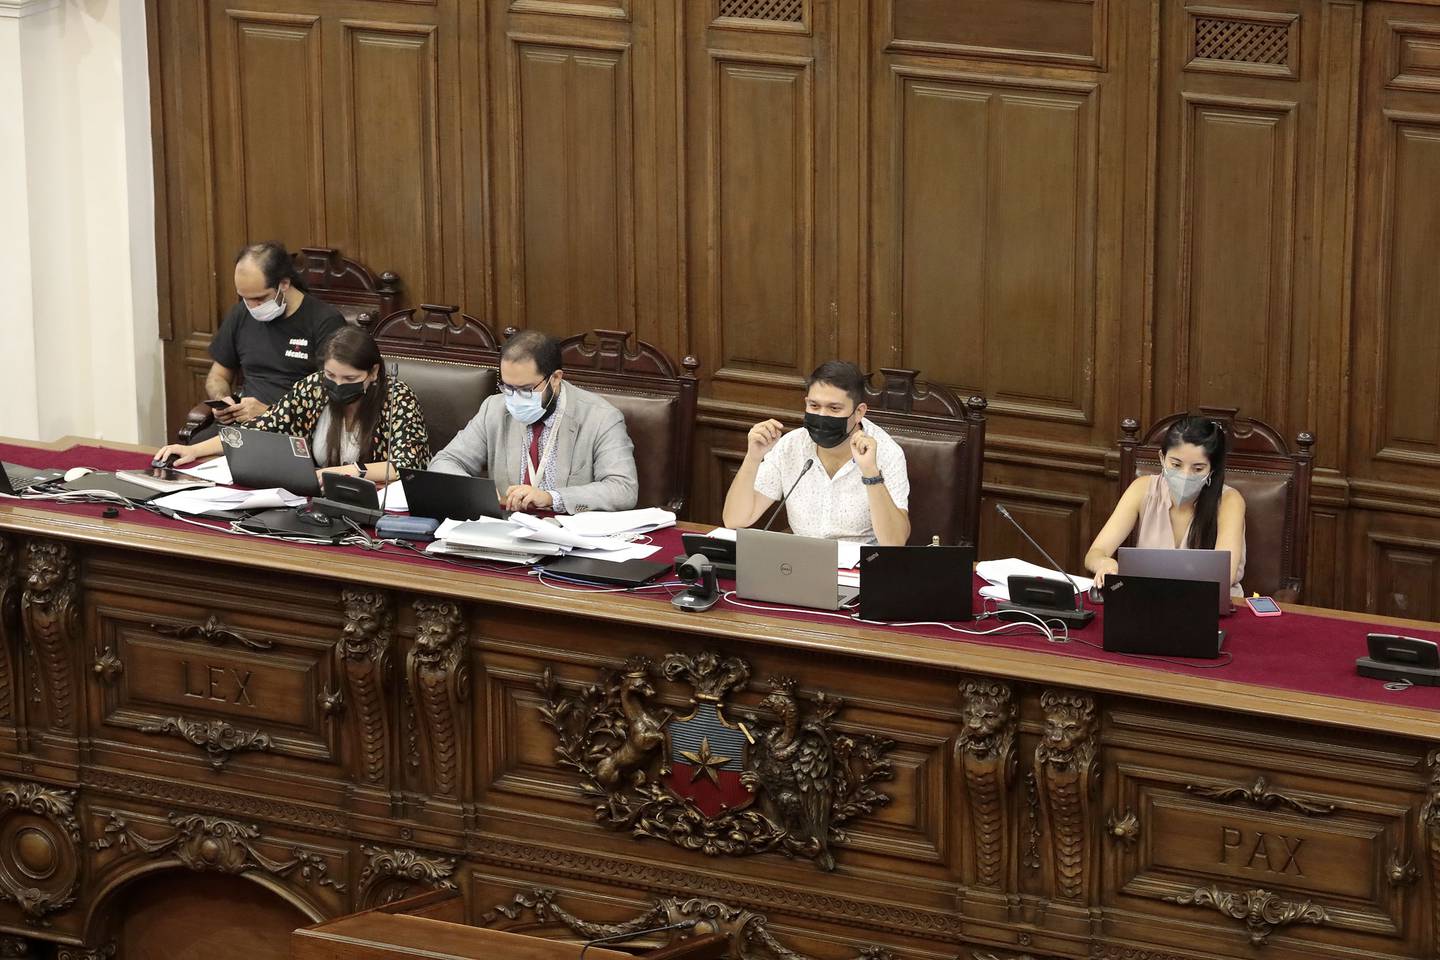 Desconfianza en los constituyentes (55%) y desacuerdo general con las propuestas aprobadas (40%), son algunas de las razones por las que los chilenos rechazarían el plebiscito de salida del 4 de septiembre.